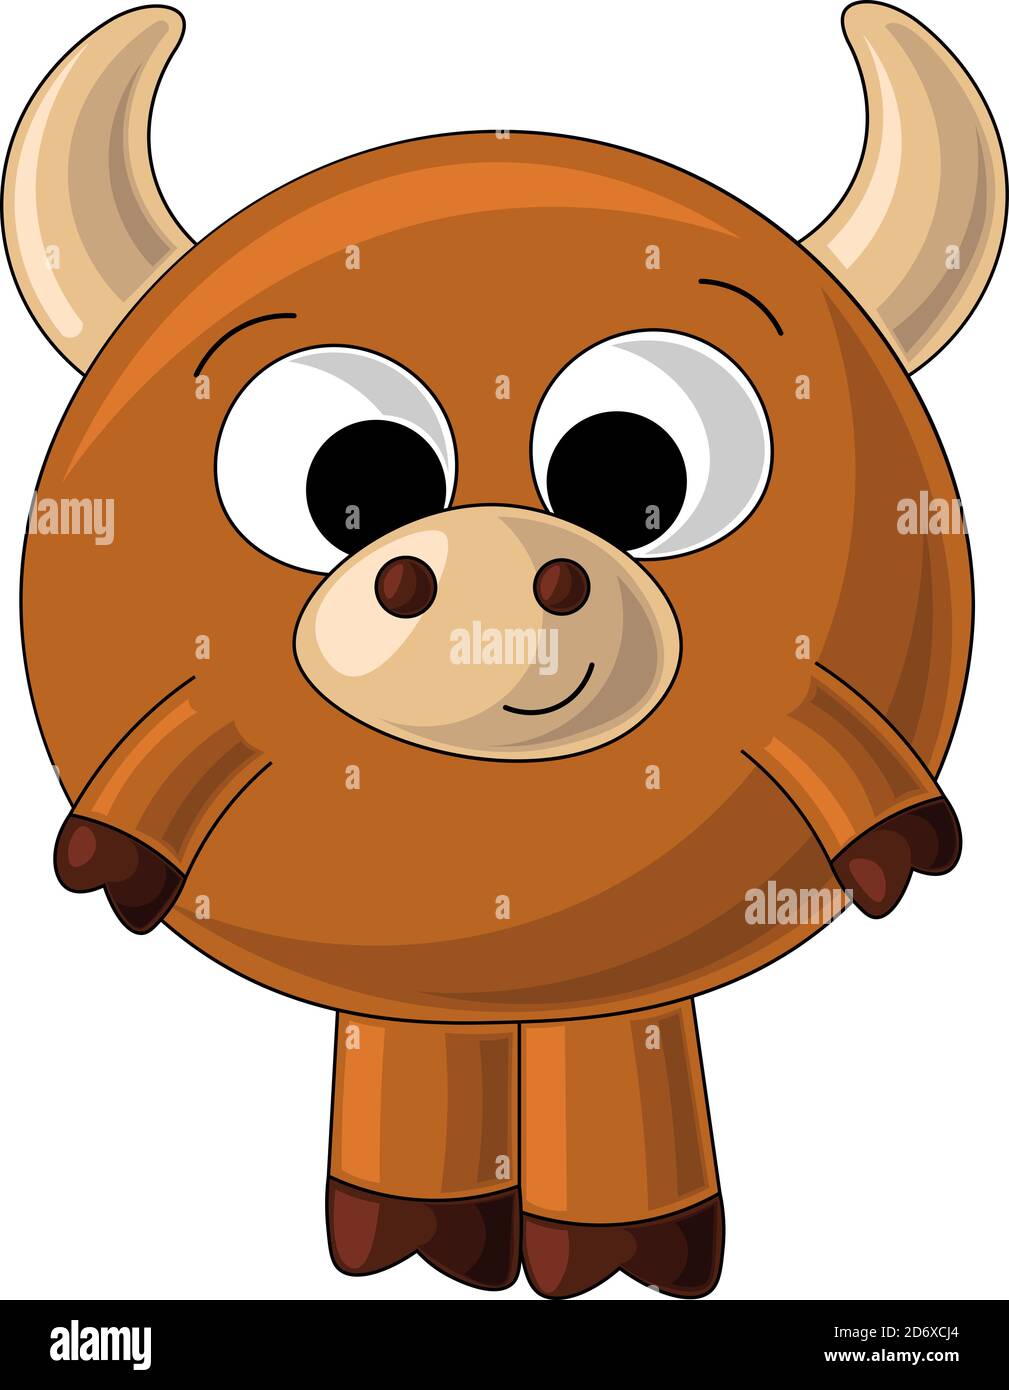 Joli taureau marron dessiné dans un style de dessin animé Illustration de Vecteur